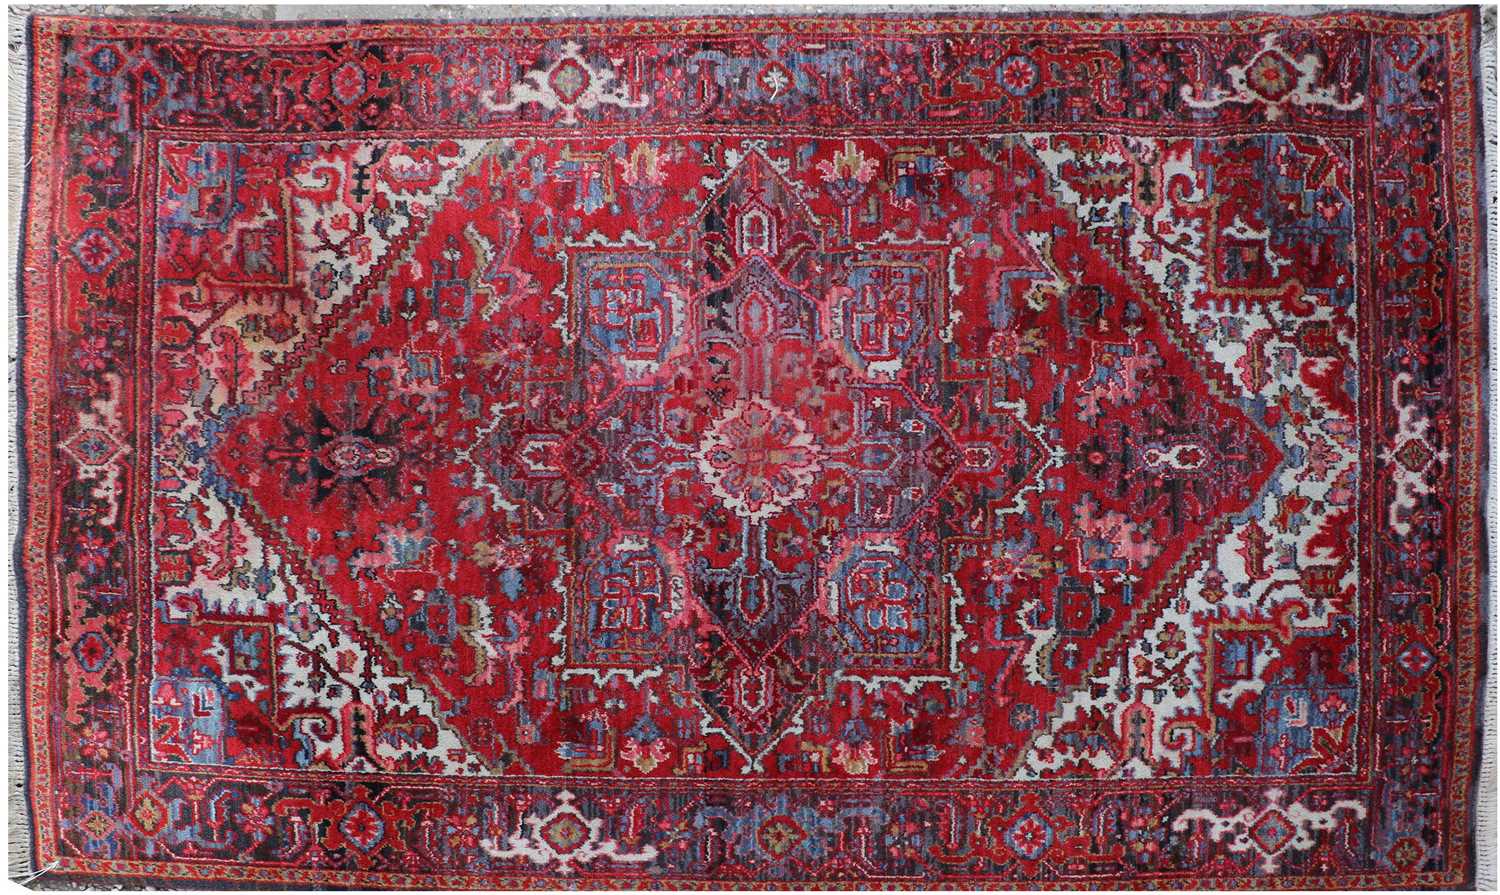 Lot 332 - An Oriental rug